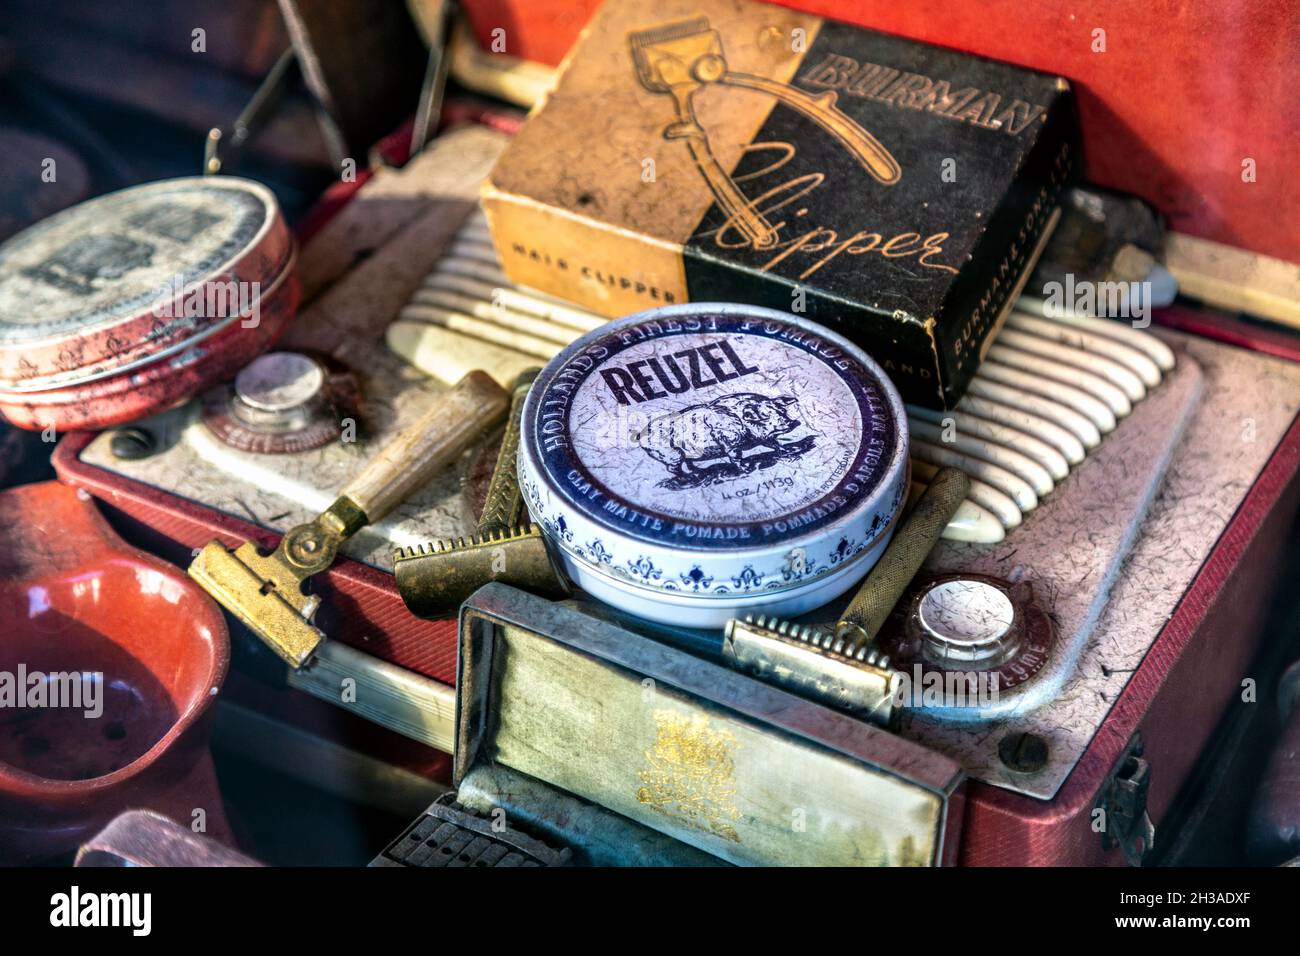 Exposición de accesorios de la tienda de babrers vintage y retro, maquinillas de afeitar, productos para el cabello (Palace Barber, East Molesey, Londres, Reino Unido) Foto de stock